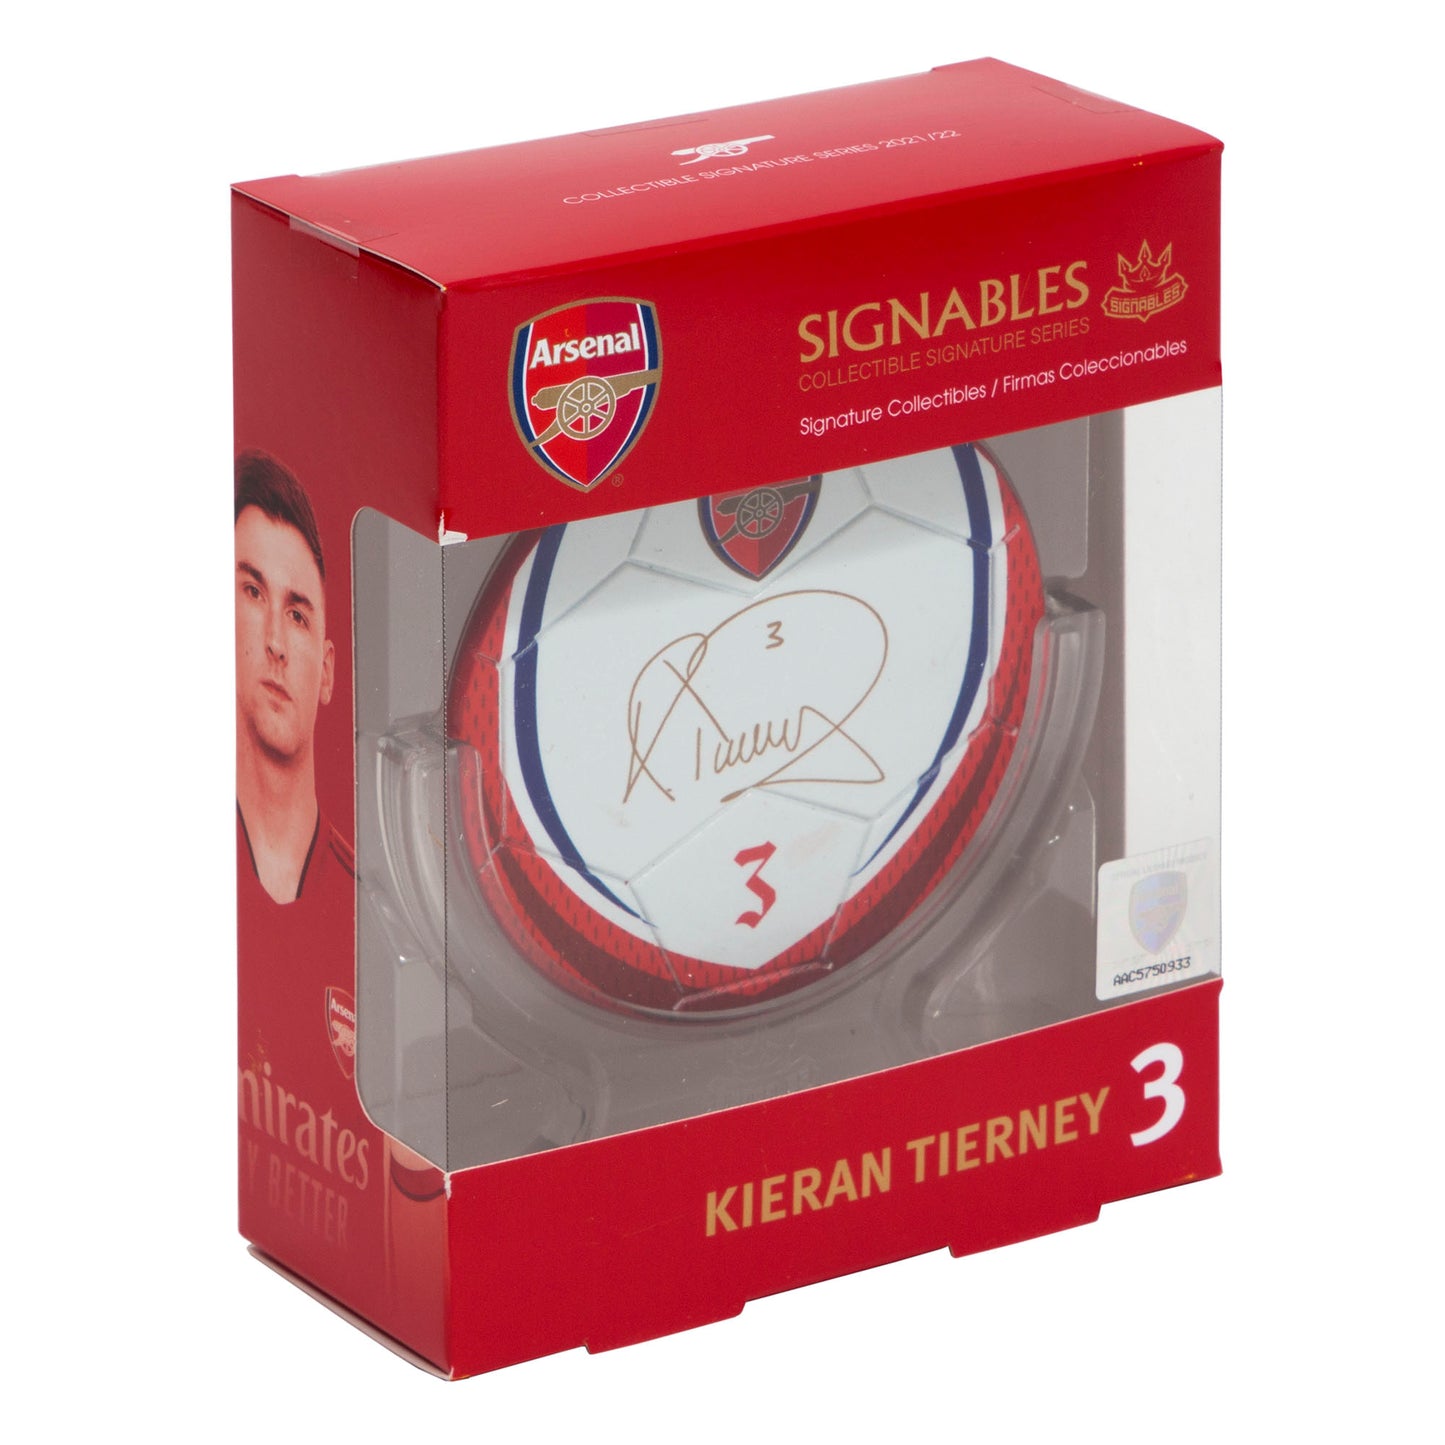 Kieran Tierney - Arsenal F.C. Signables Collectible